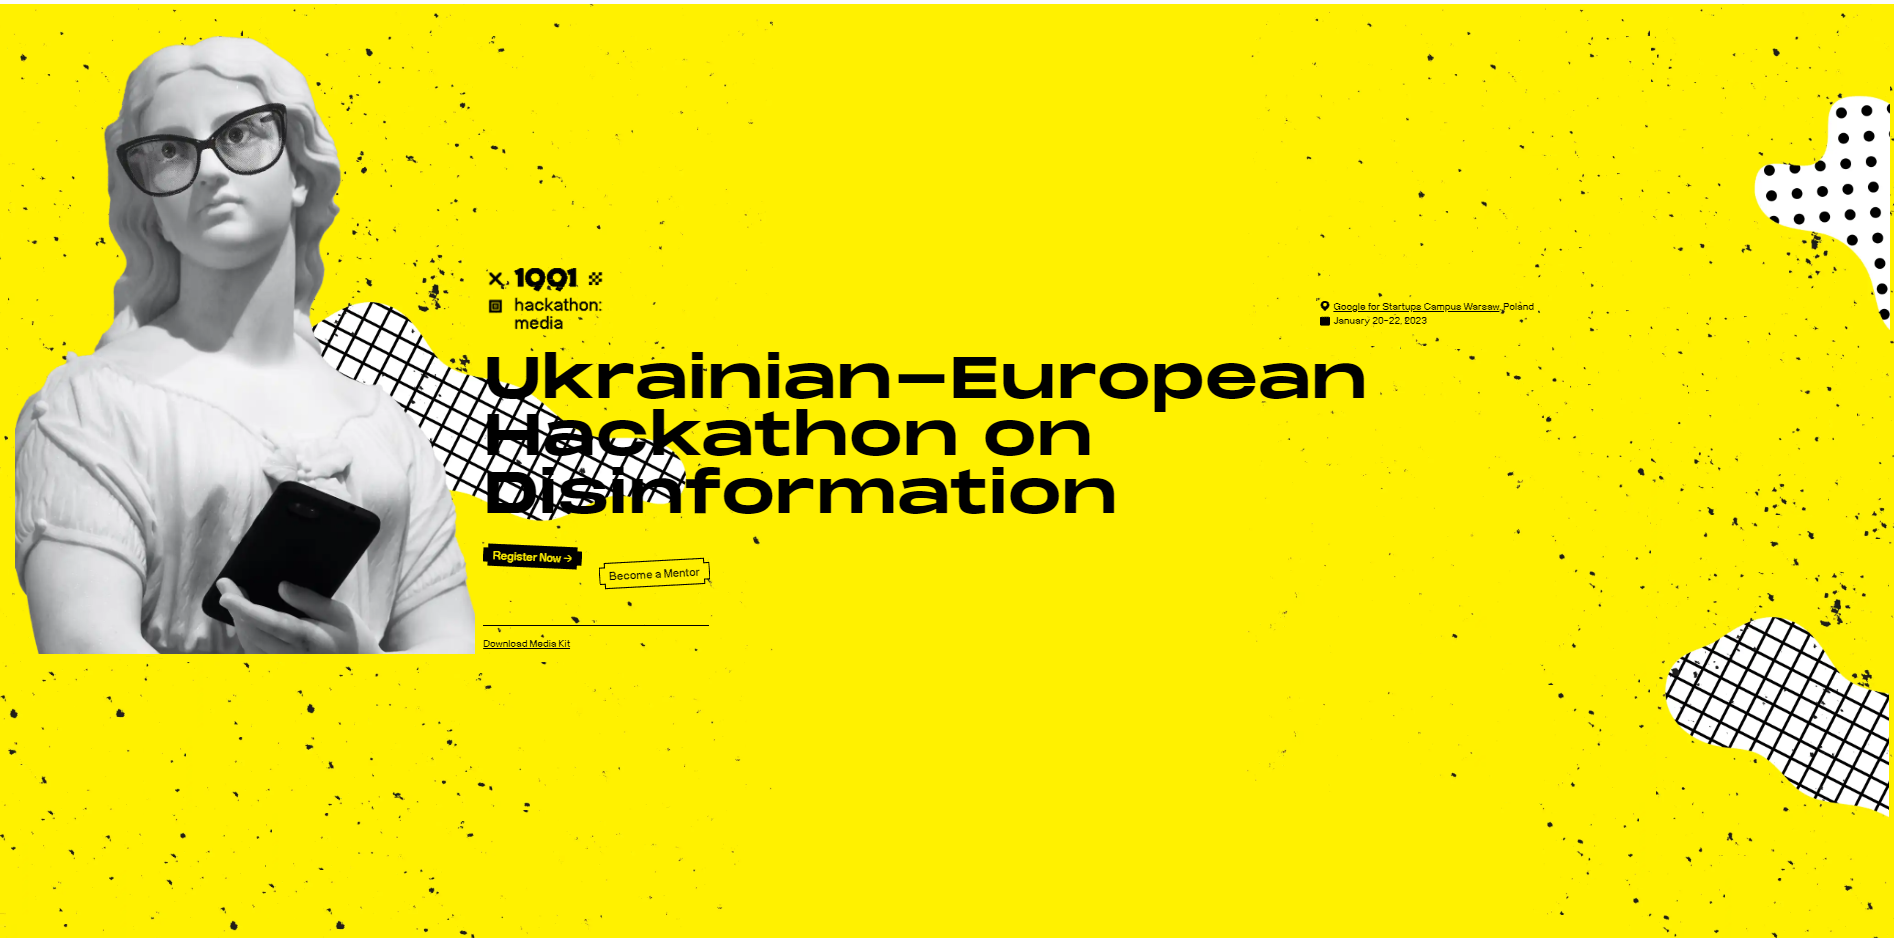 1991 Hackathon: Media
